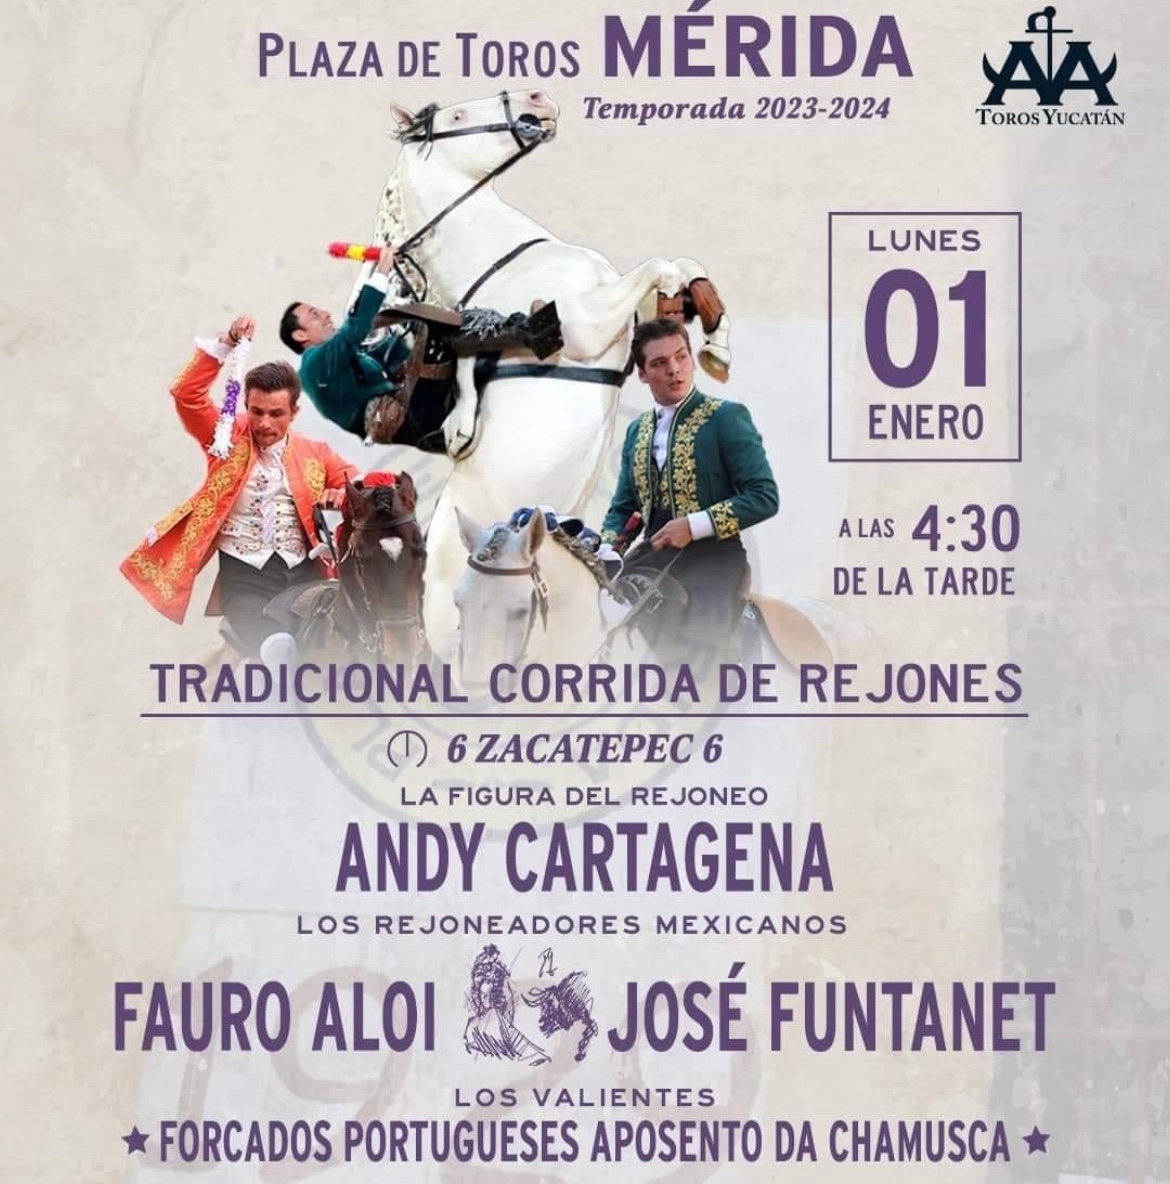 La Mérida anuncia la tradicional corrida de rejones.